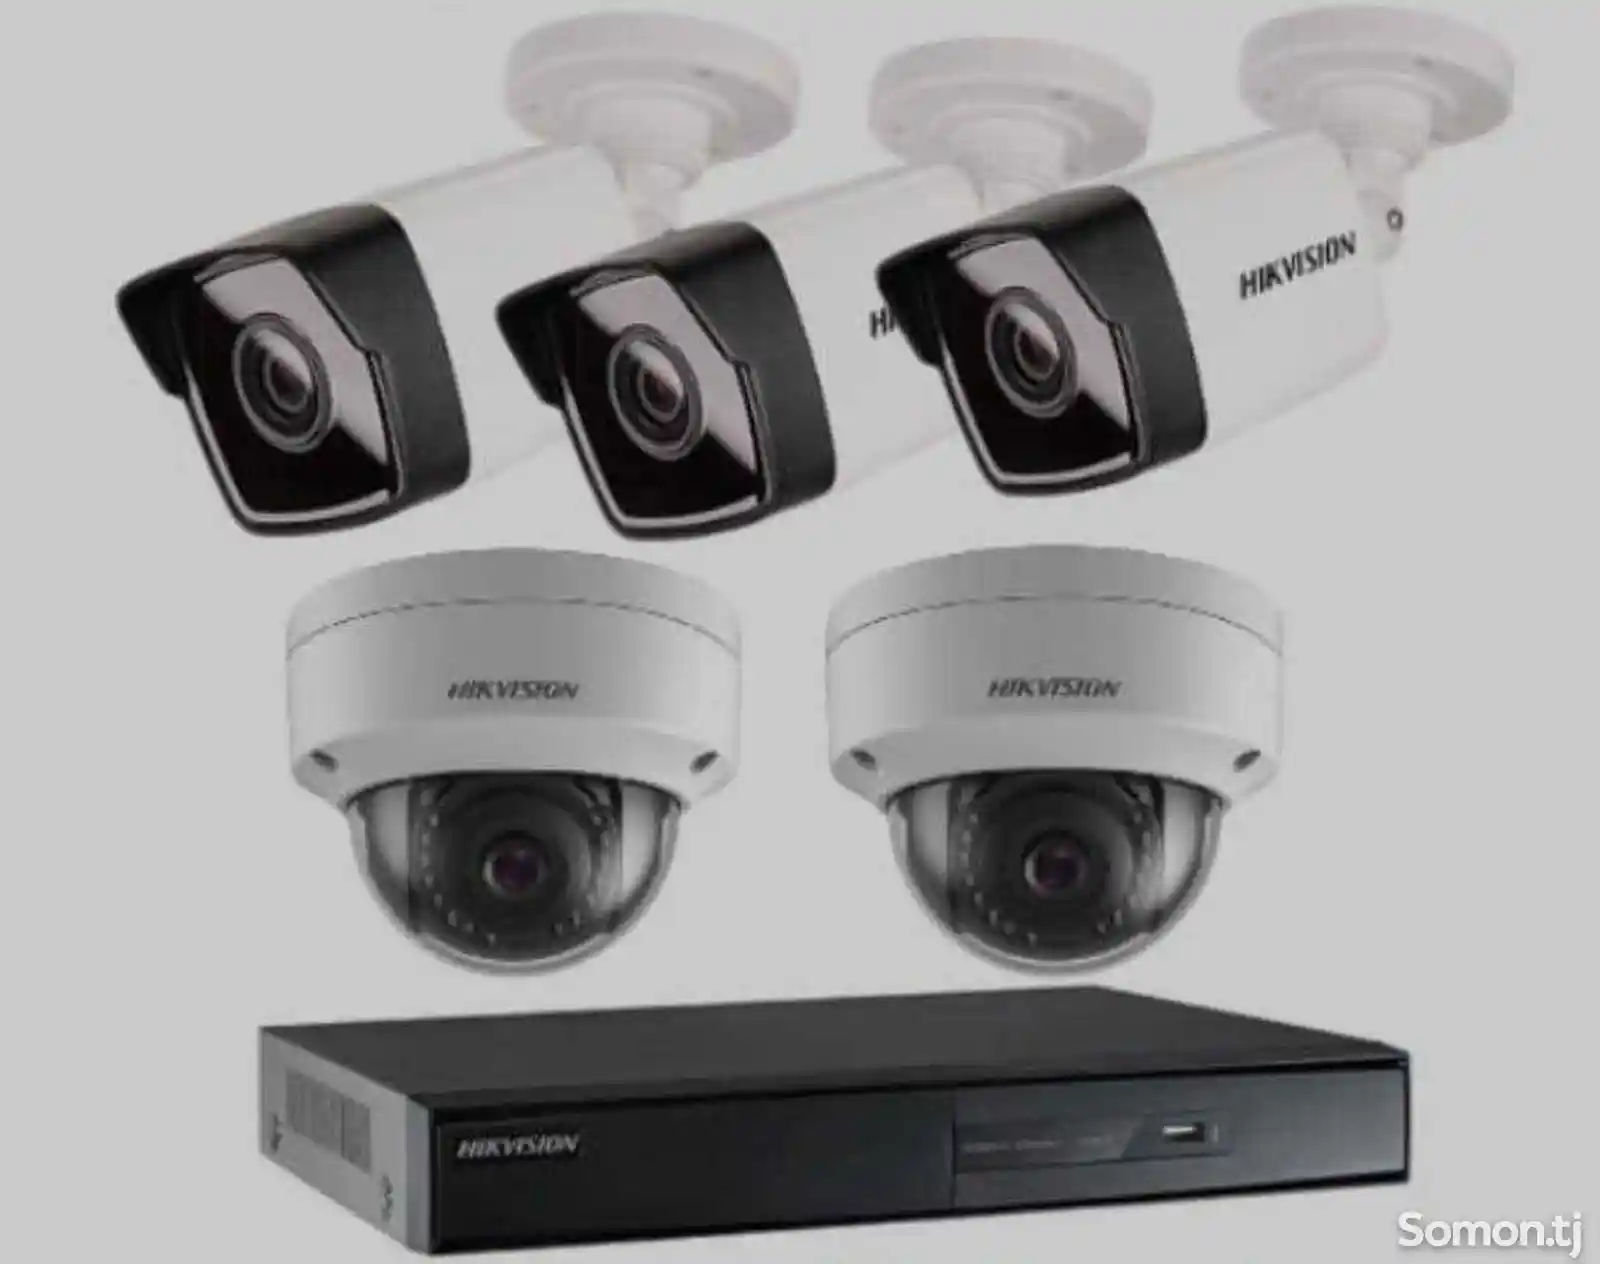 Прошивка базы и камеры видеонаблюдения